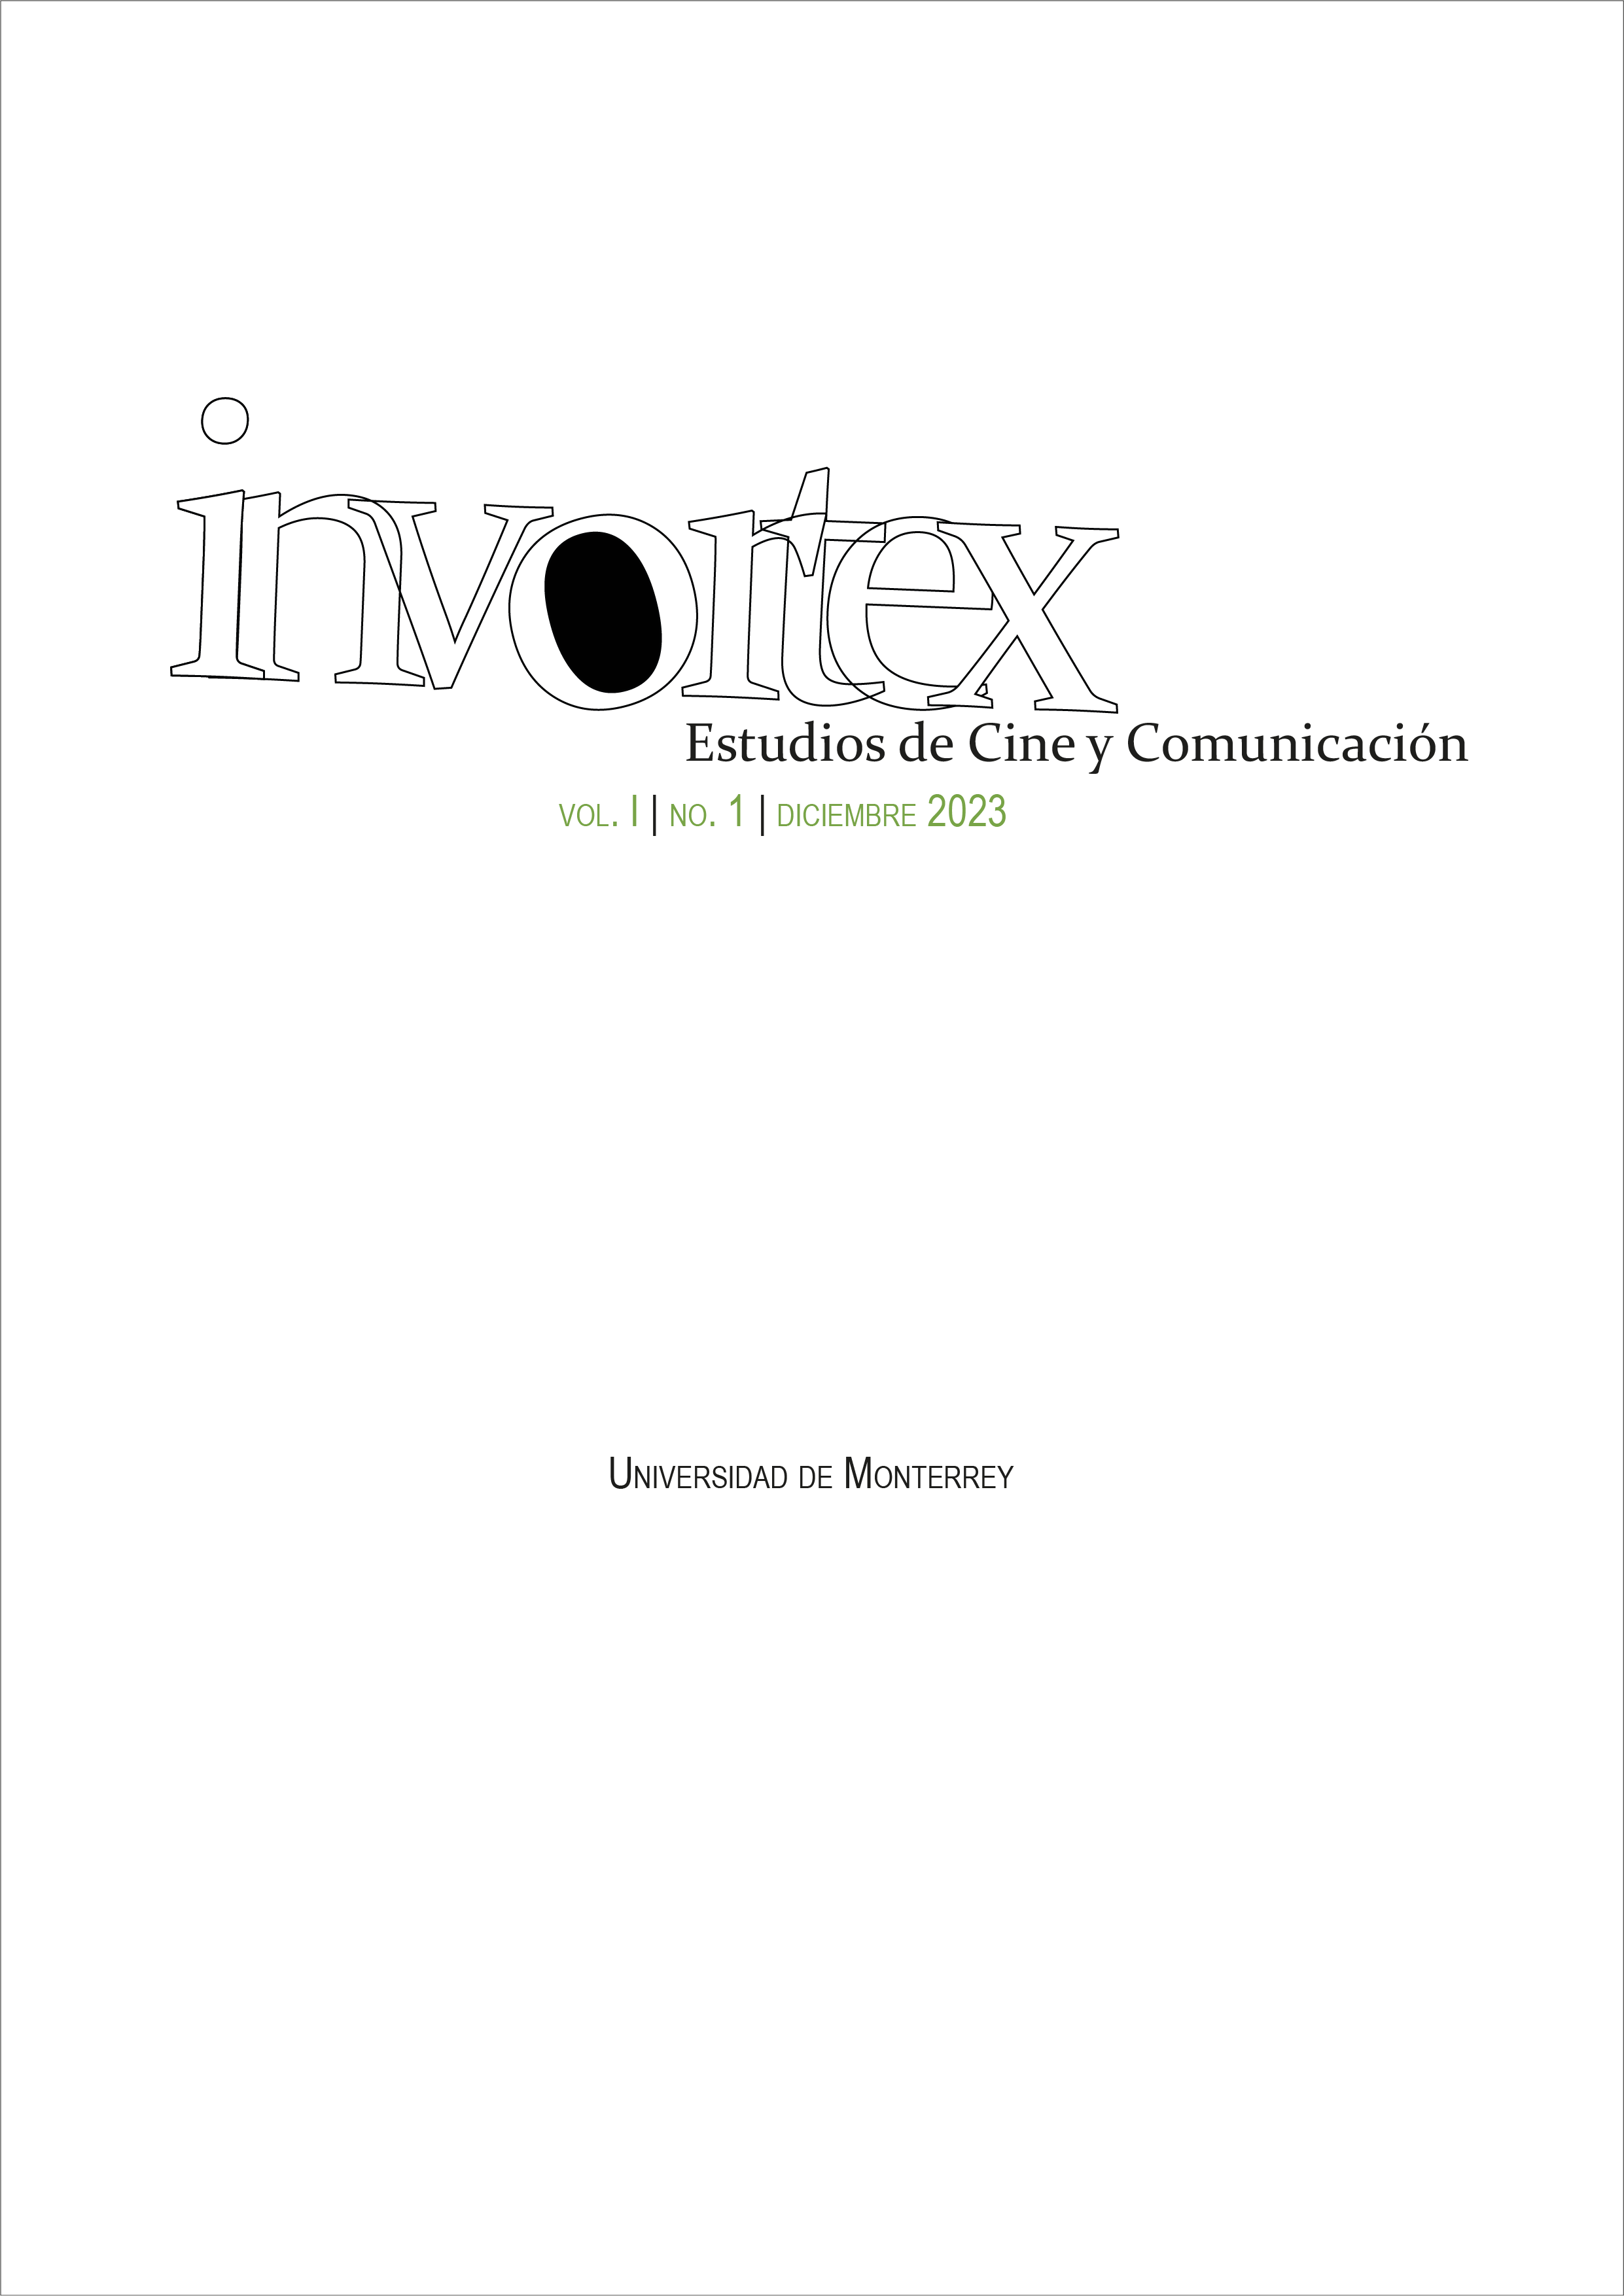 Portada invortex Estudios de Cine y Comunicación vol.I no.1